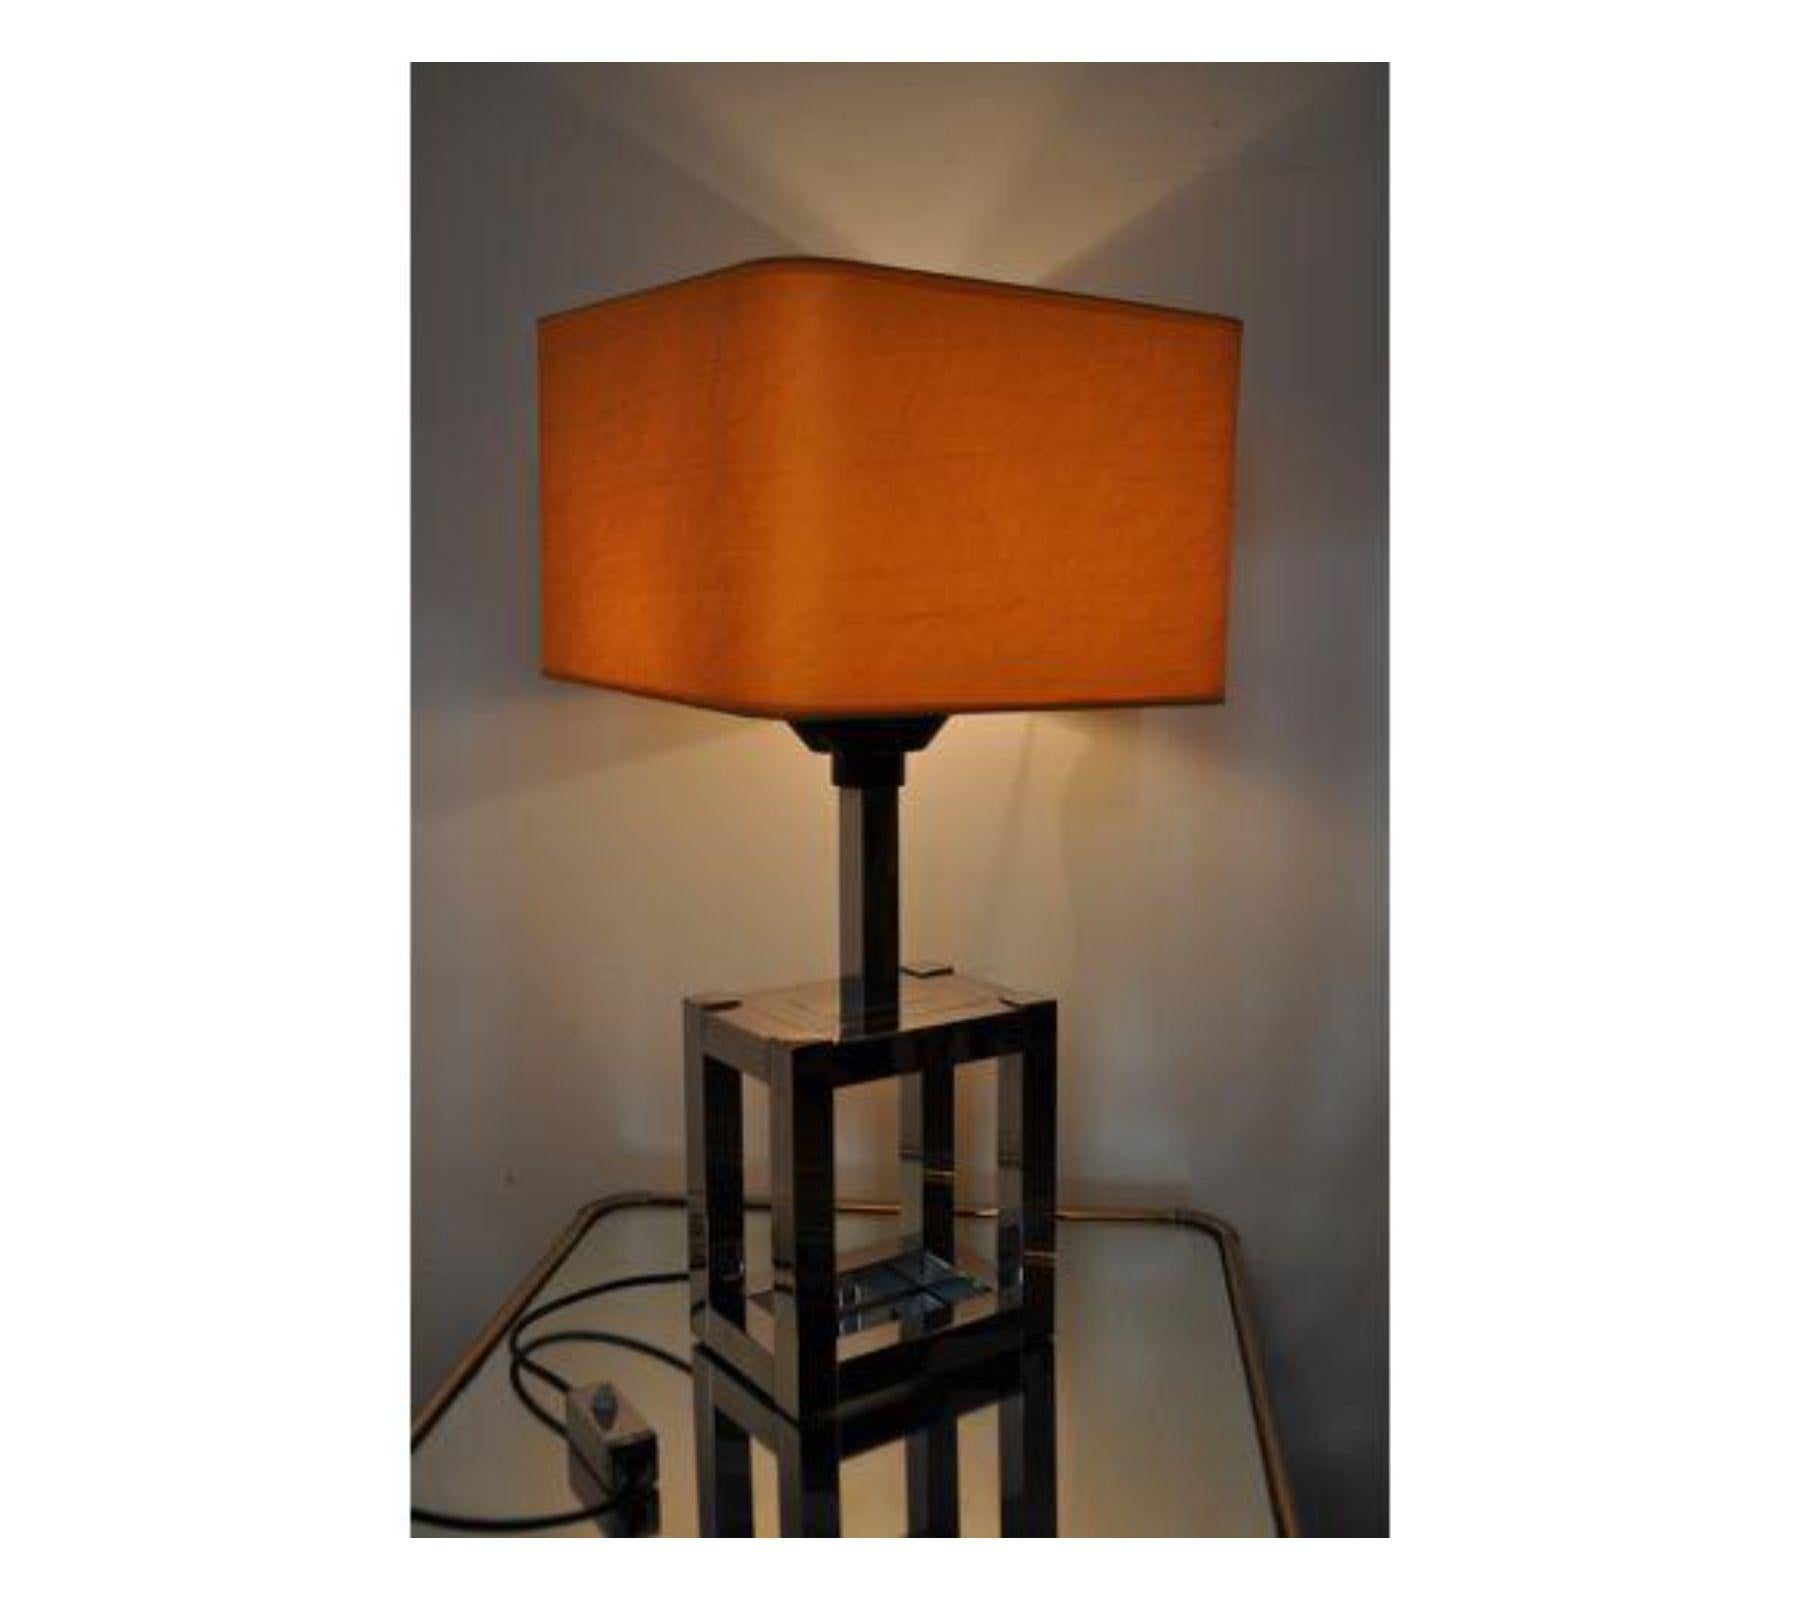 Superbe et rare lampe de table cubique Willy Rizzo conçue en Italie pour Lumica vers 1970. La lampe est composée d'une structure cubique chromée. Cet objet est une véritable œuvre d'art et un objet de design unique qui mettra en valeur votre projet